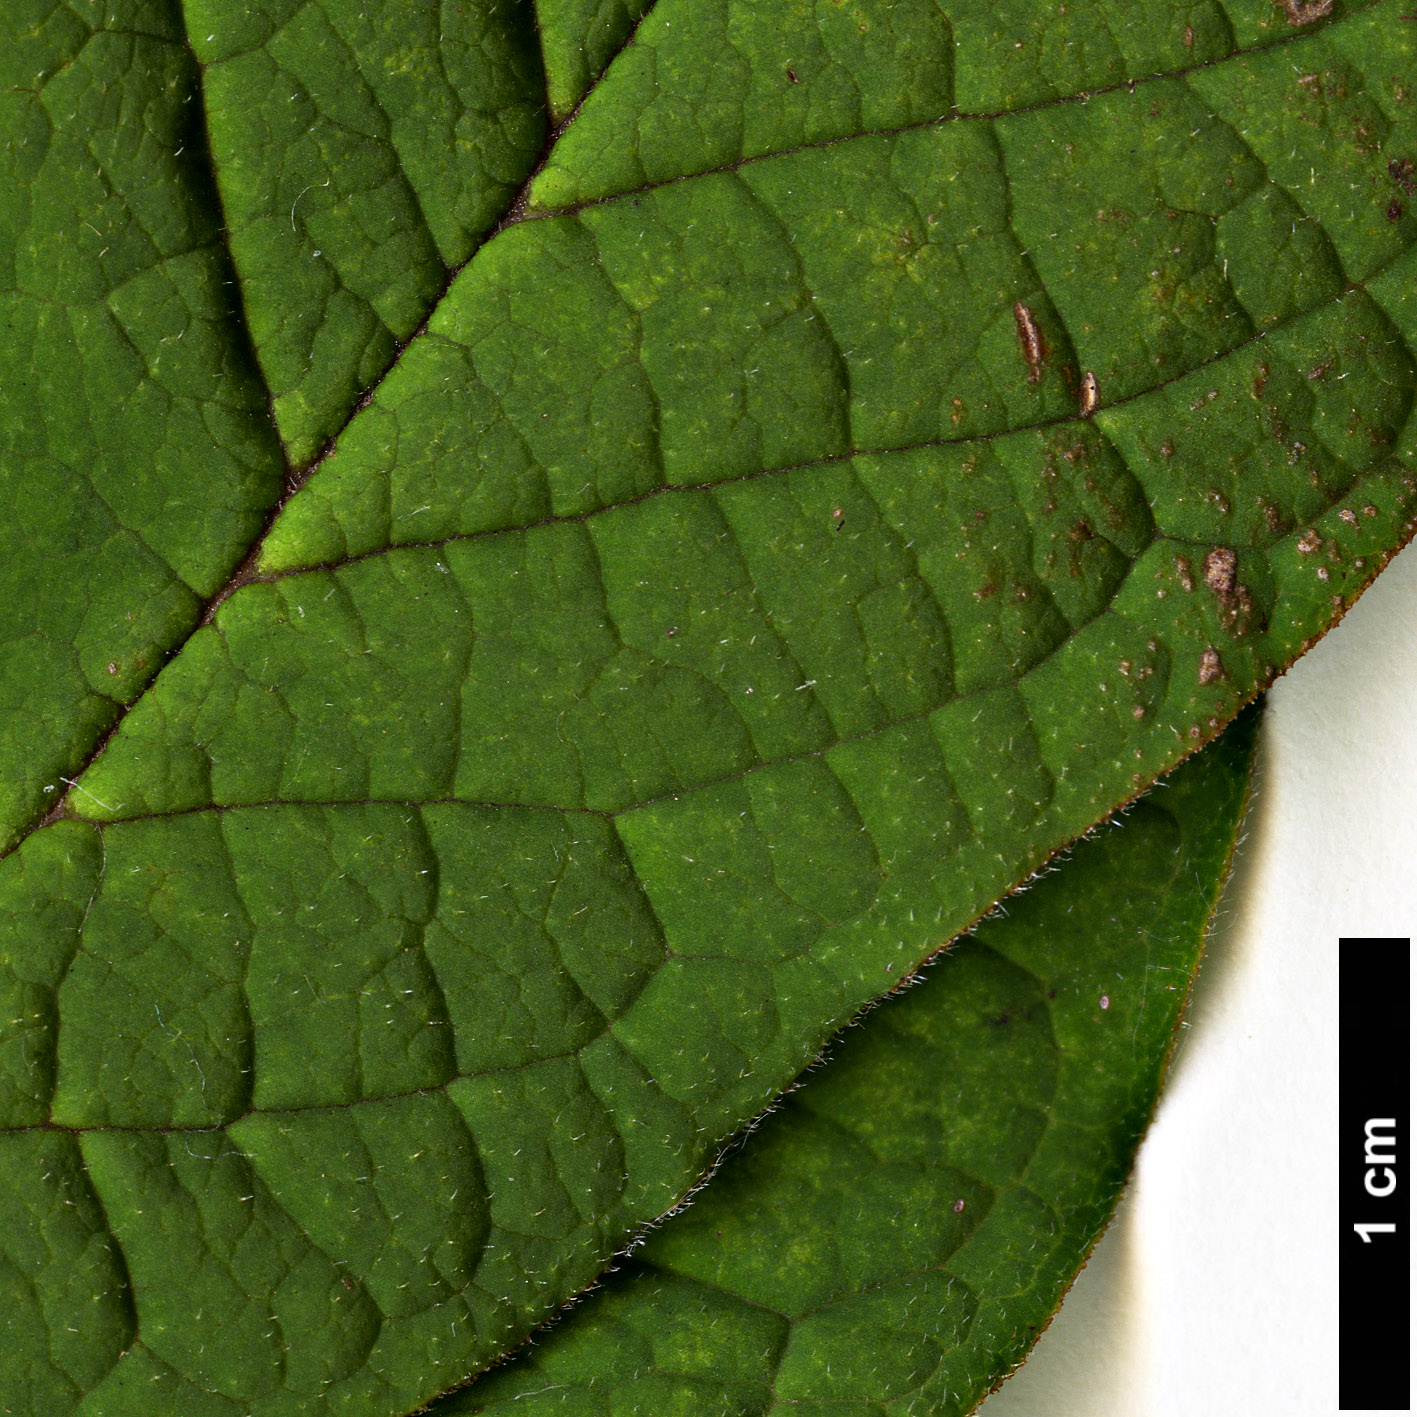 High resolution image: Family: Oleaceae - Genus: Syringa - Taxon: ×henryi - SpeciesSub: 'Alba' (S.josikaea × S.villosa)